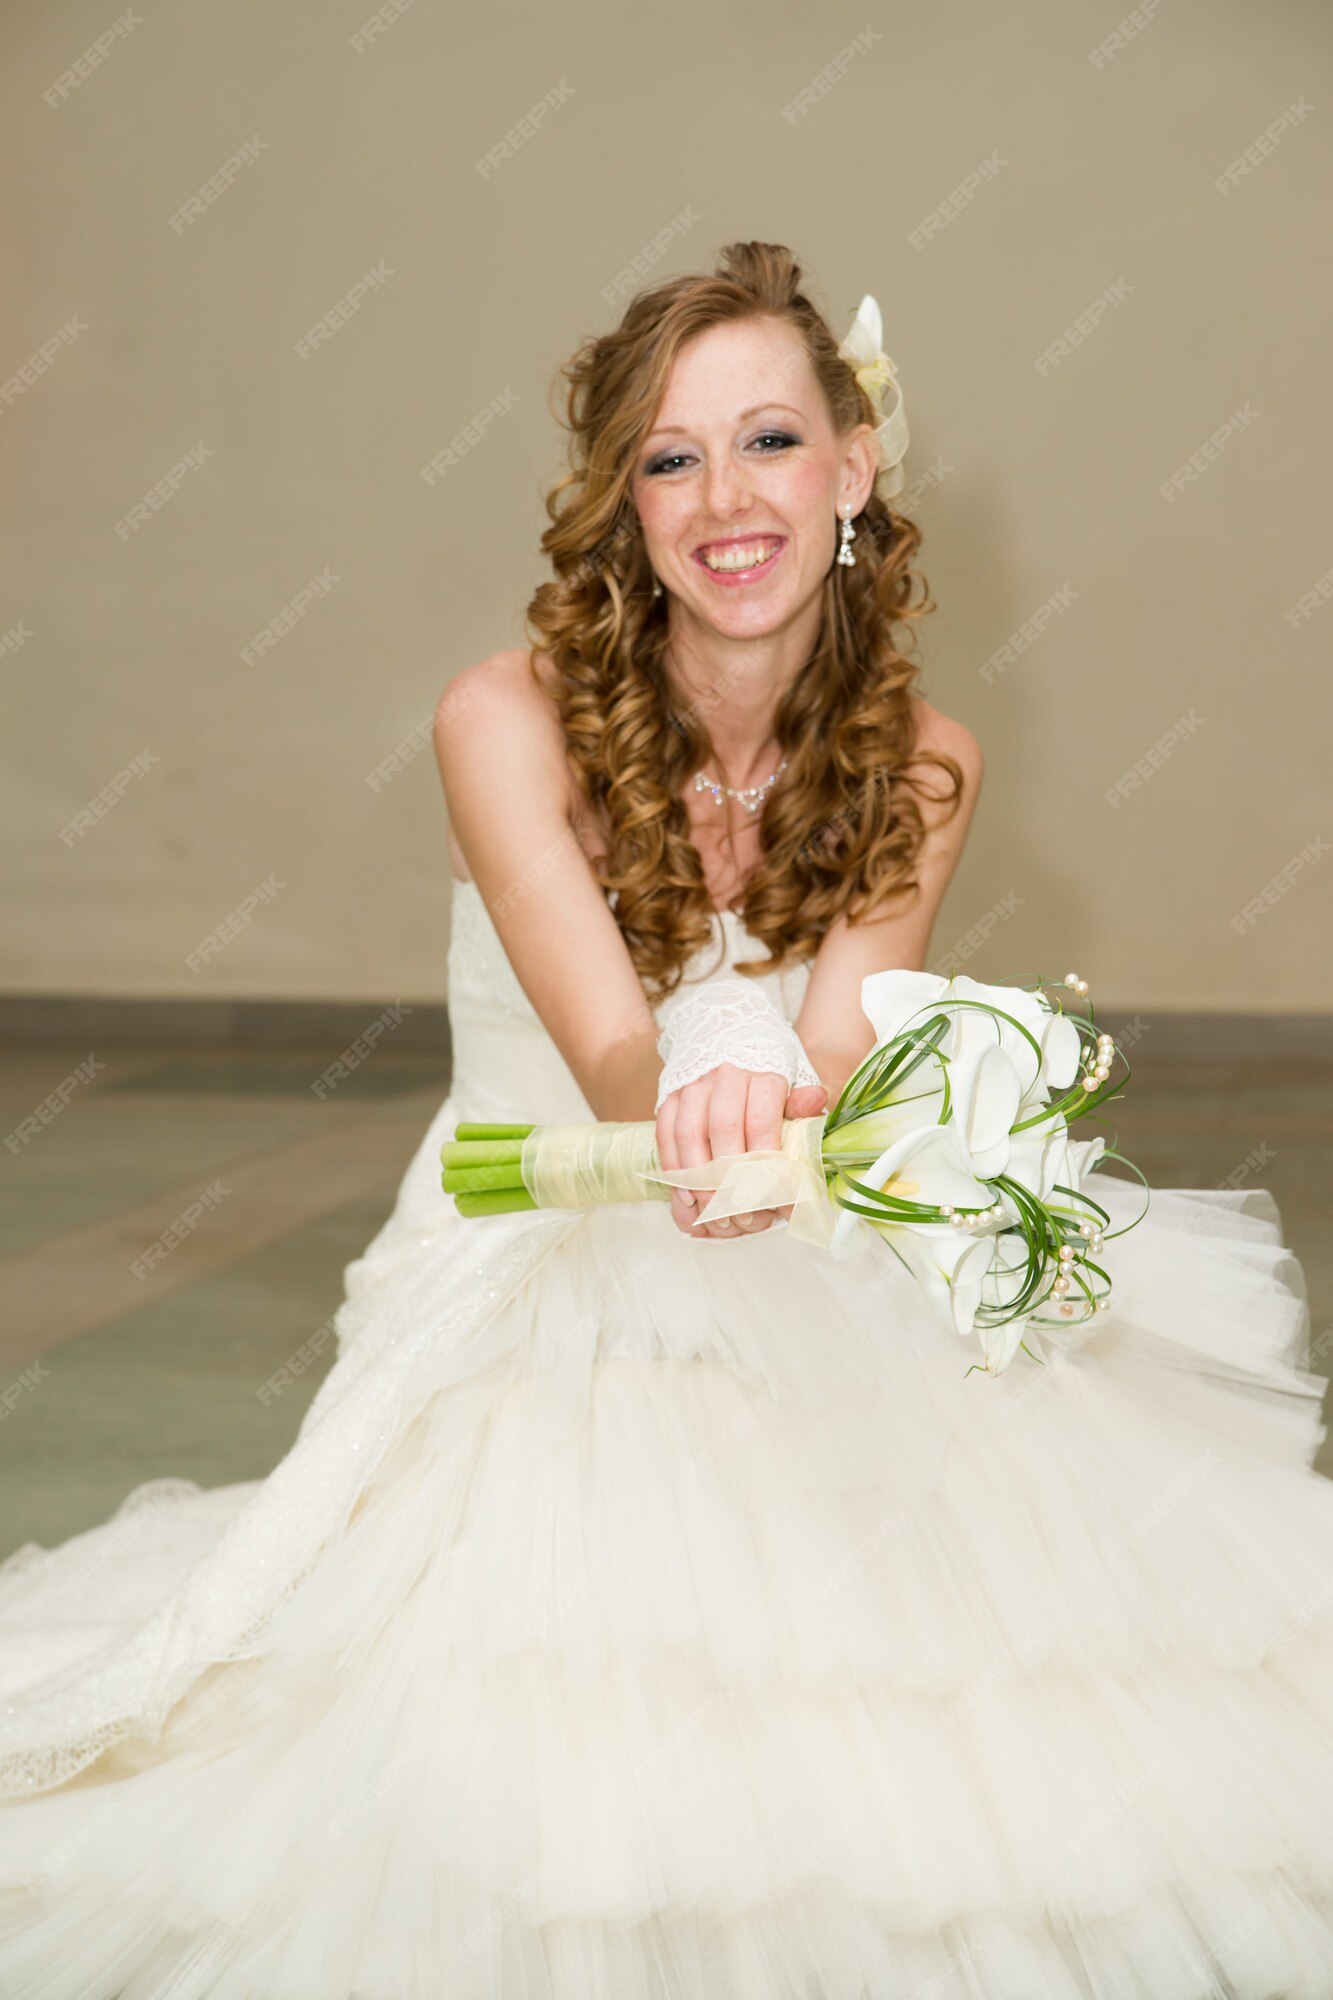 Hermosa novia con un vestido blanco con un ramo de alcatraces | Foto Premium